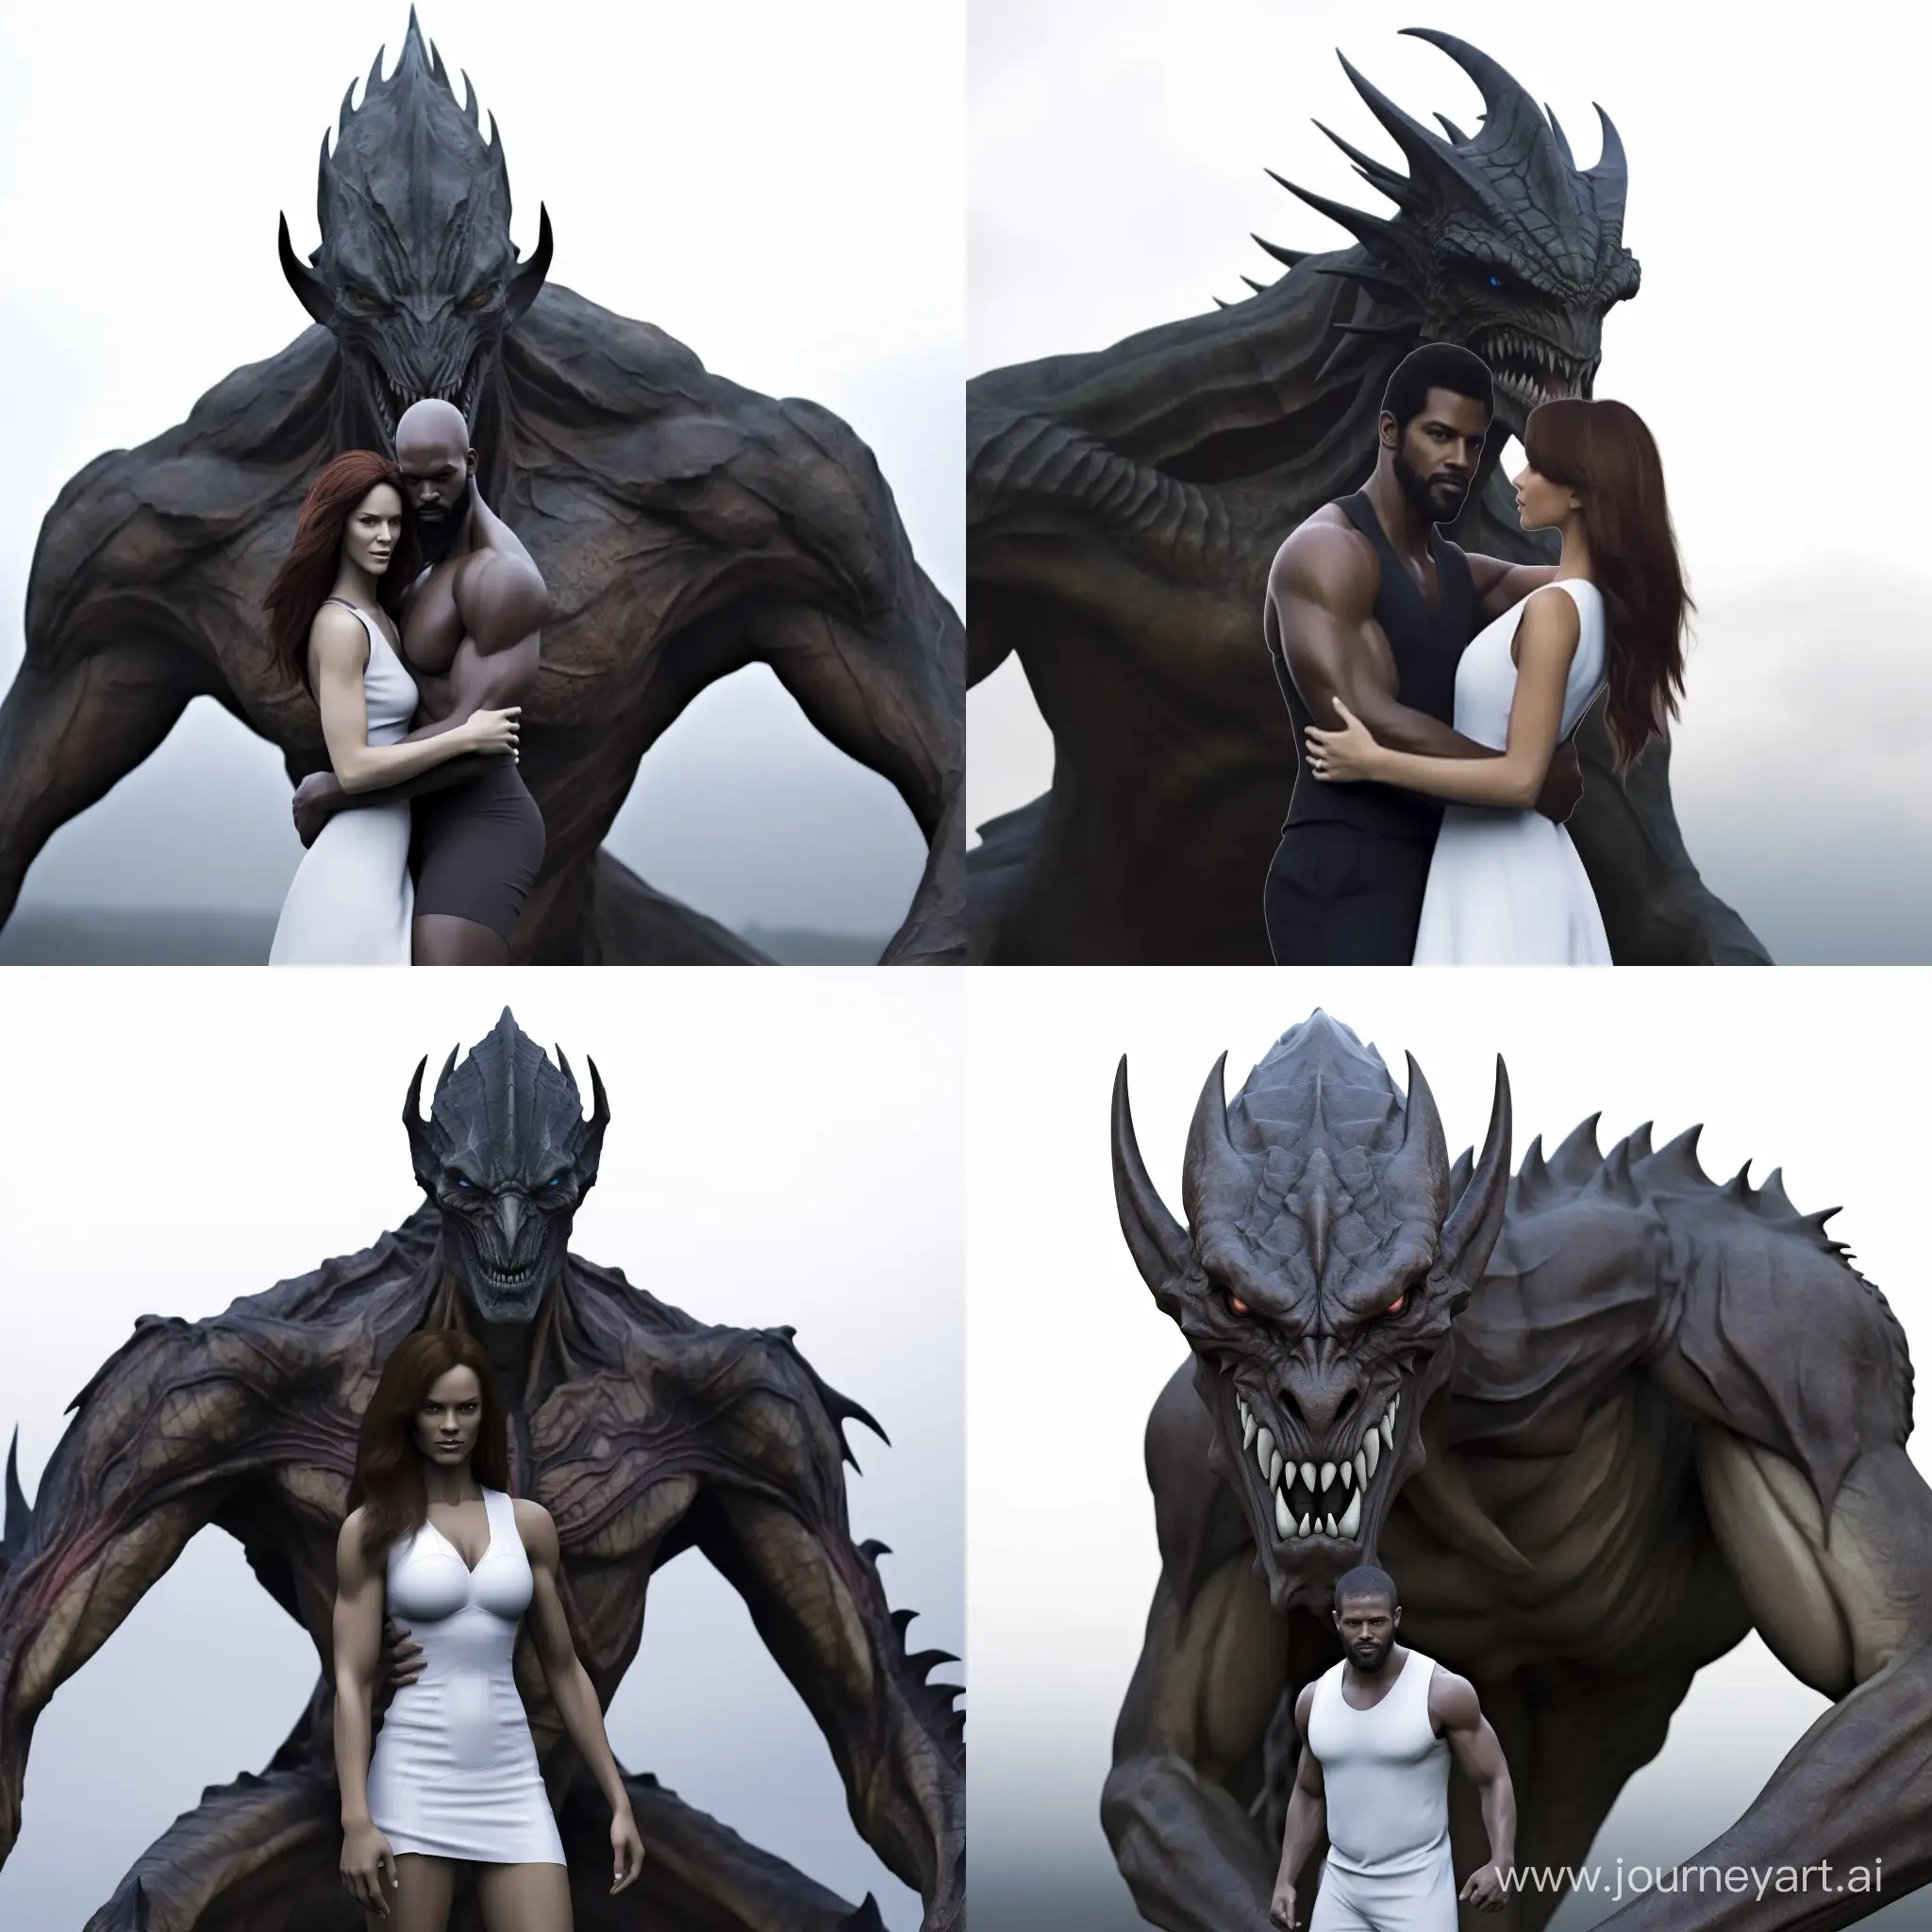 Enchanting-Encounter-Black-Dragon-Man-Embracing-White-Dragon-Woman